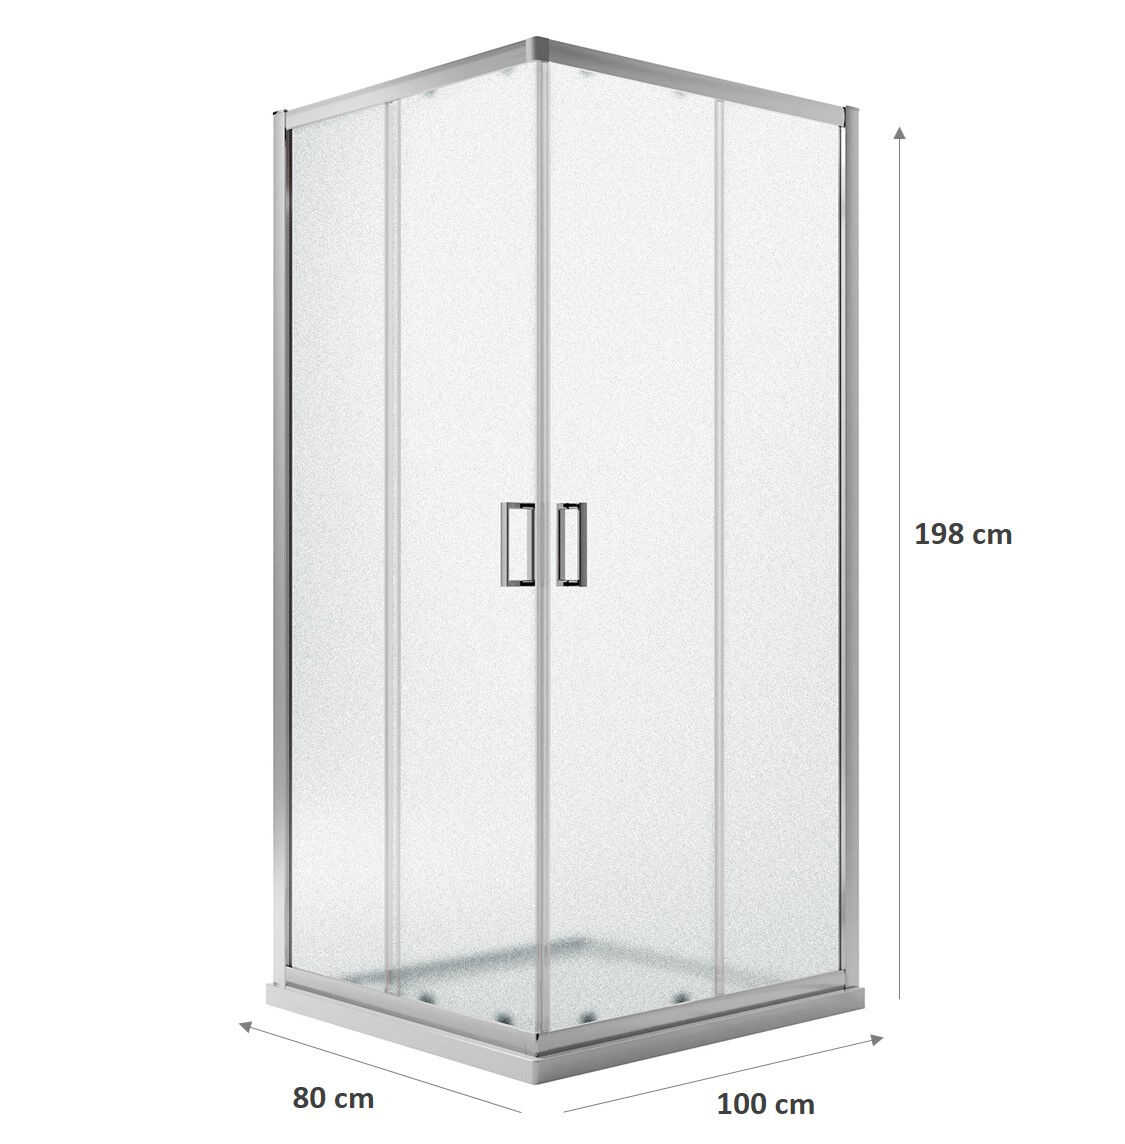 Box doccia rettangolare Modello City 80x100 cm - h 198 cm - vetro stampato